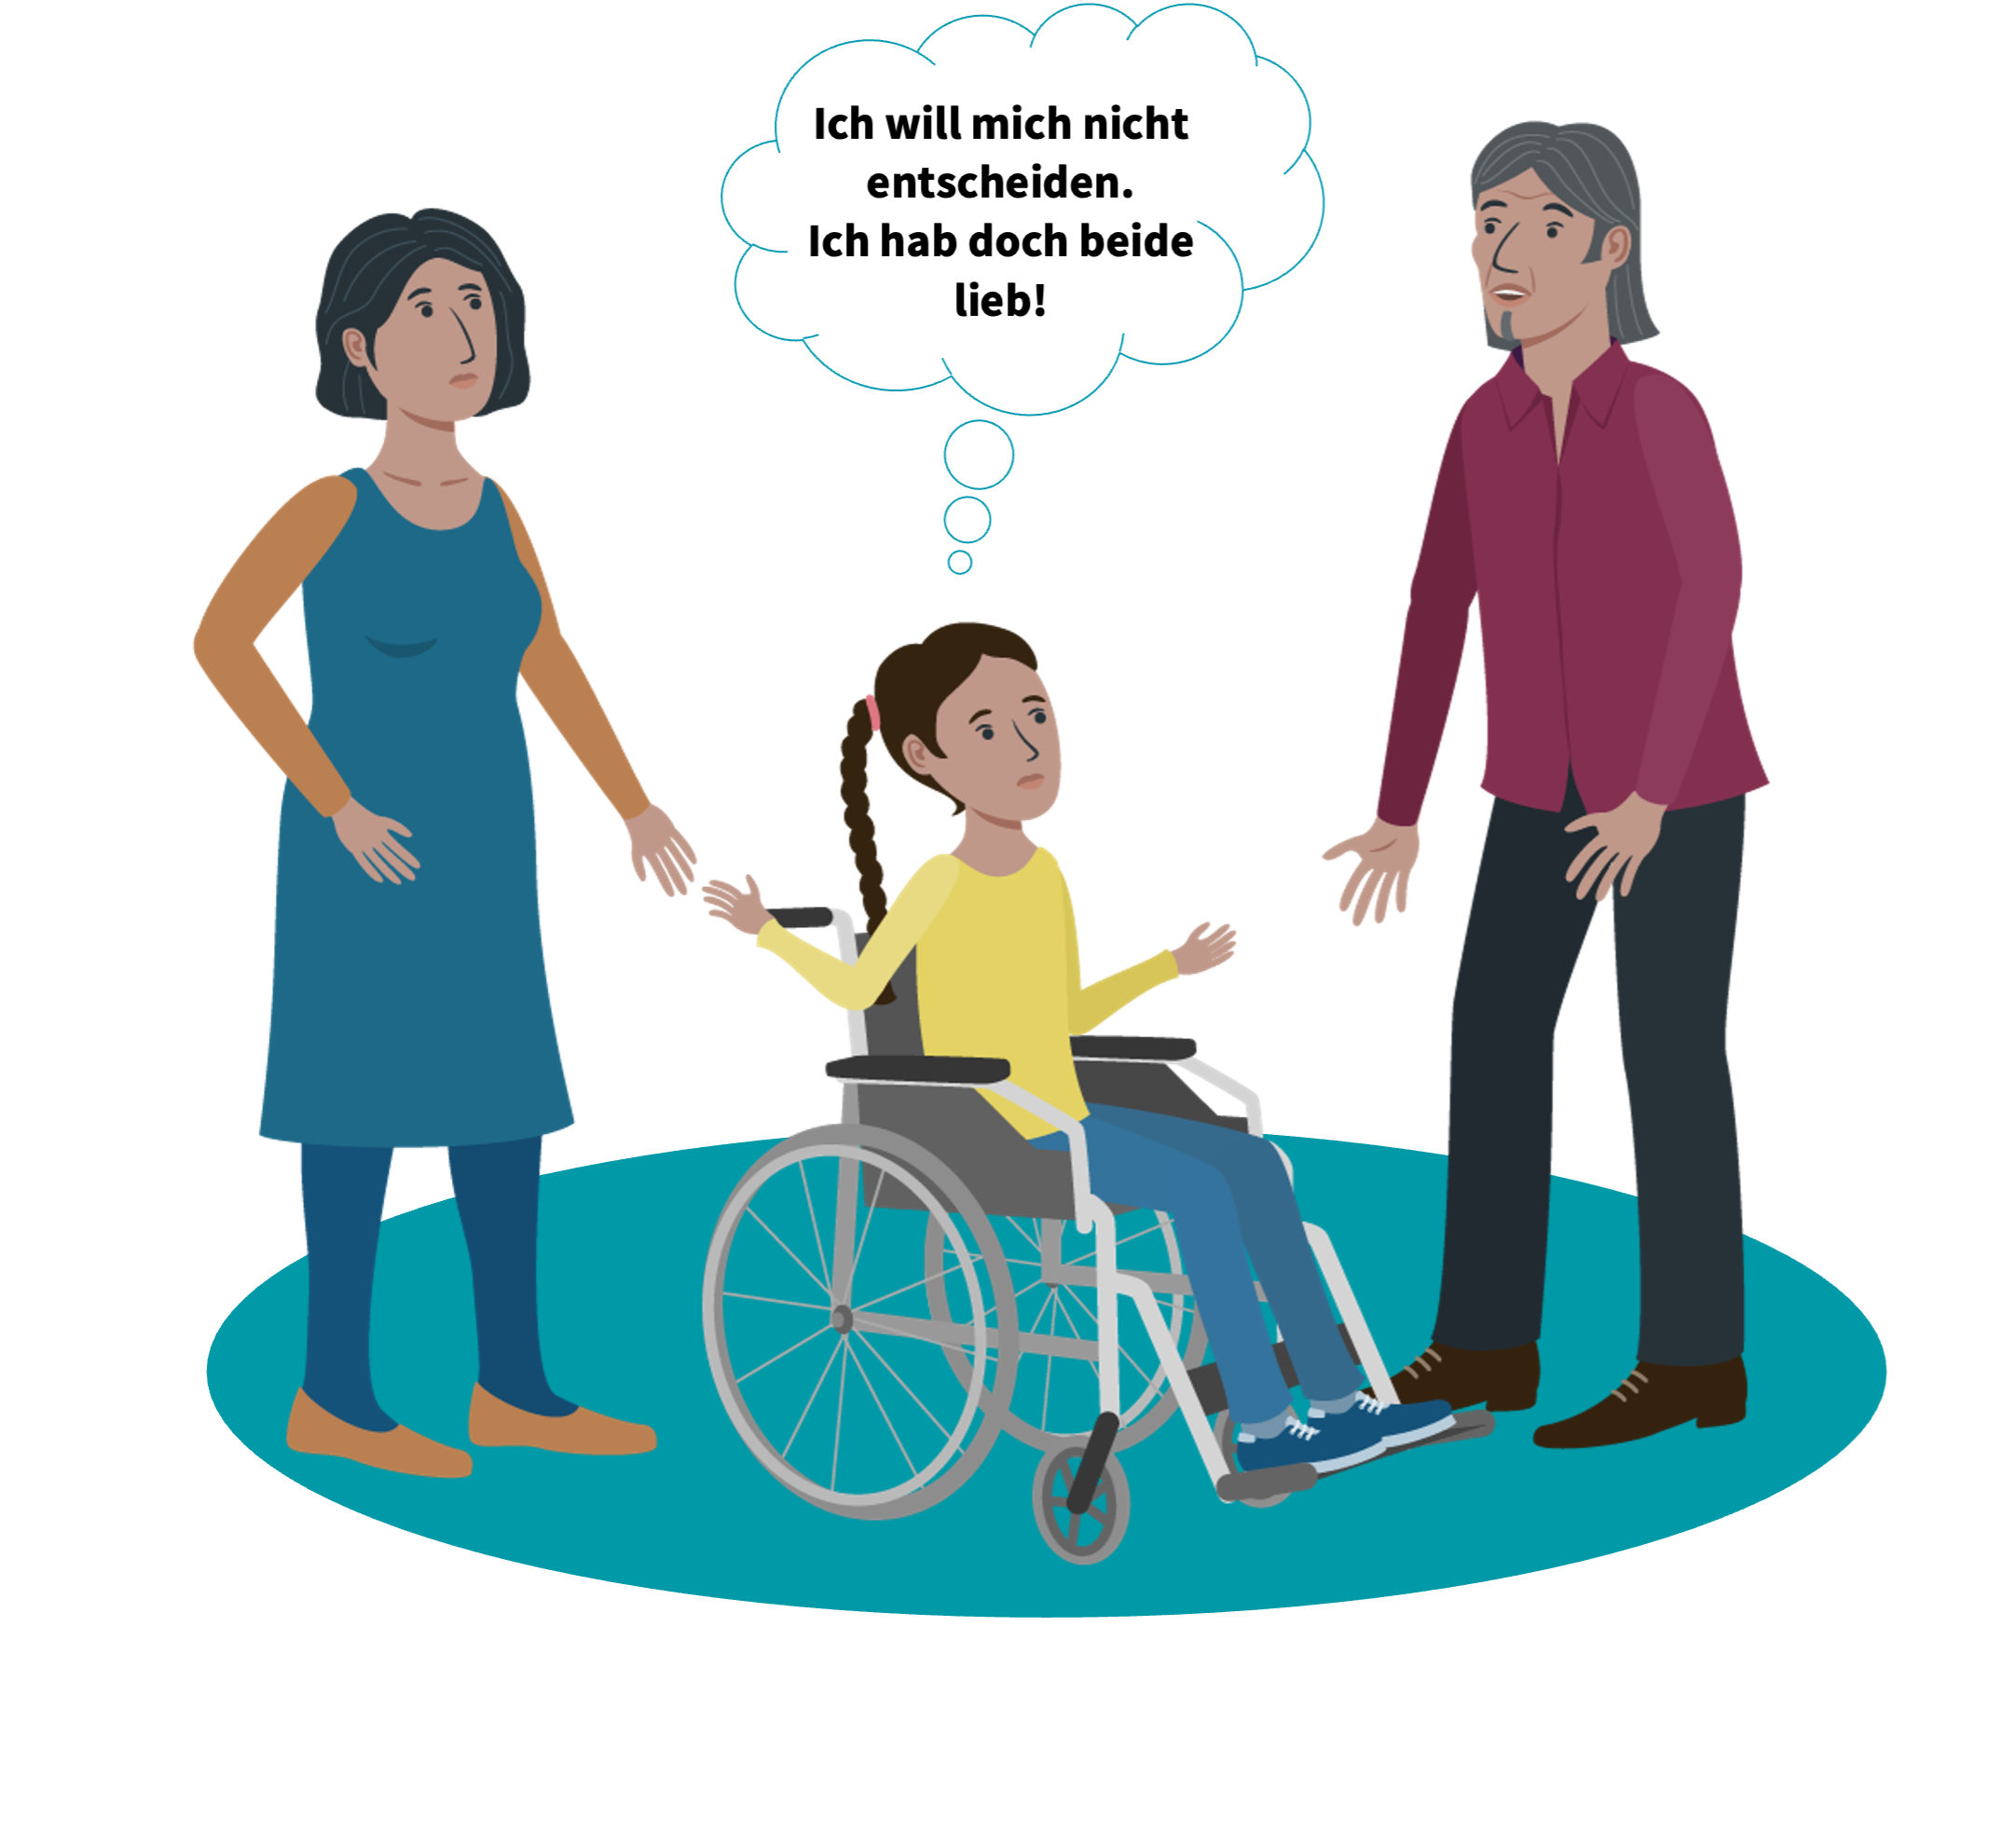 Ein Mädchen im Rollstuhl, die zwischen ihren Eltern steht. In einer Gedankenblase wird beschrieben, dass sie sich nicht zwischen ihren Eltern entscheiden möchte.